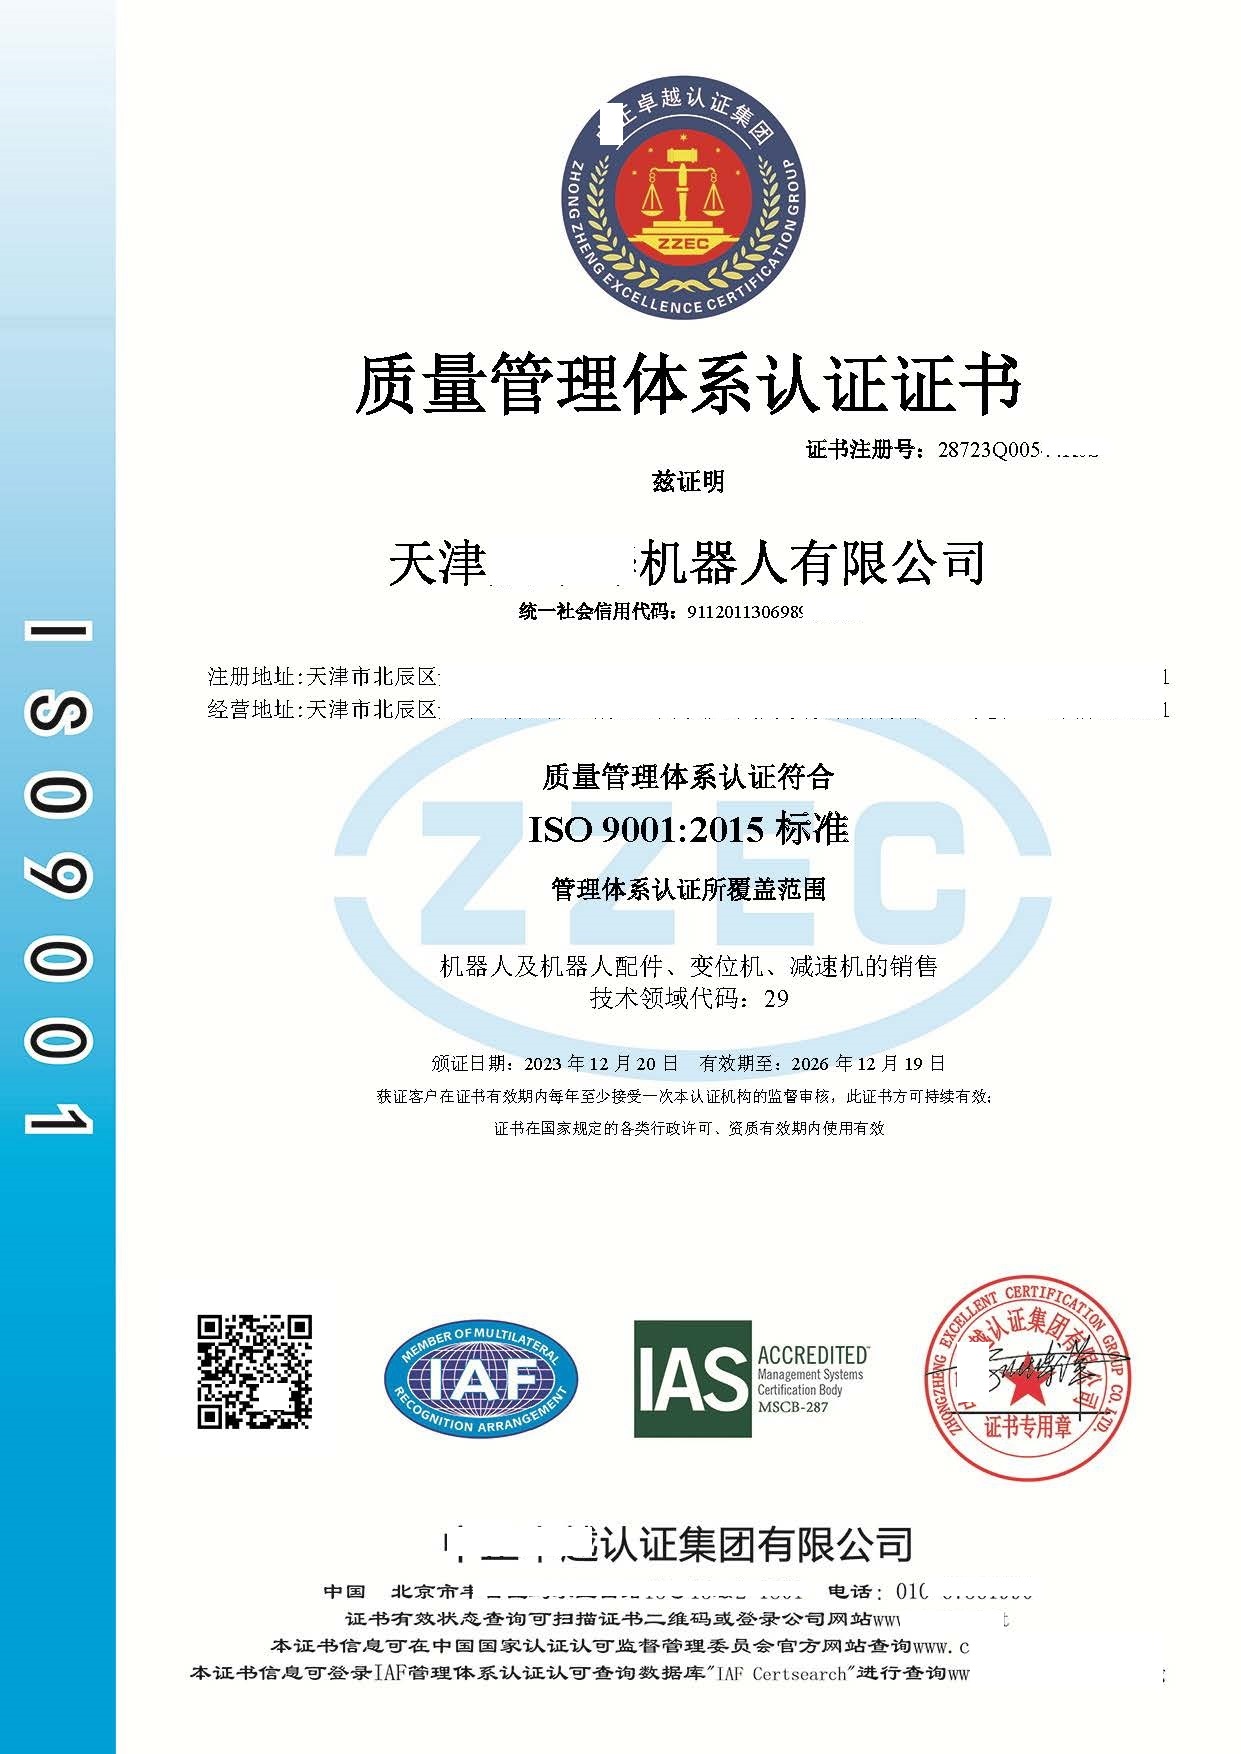 恭喜  天津******有限公司  获得ISO9001质量管理体系认证证书